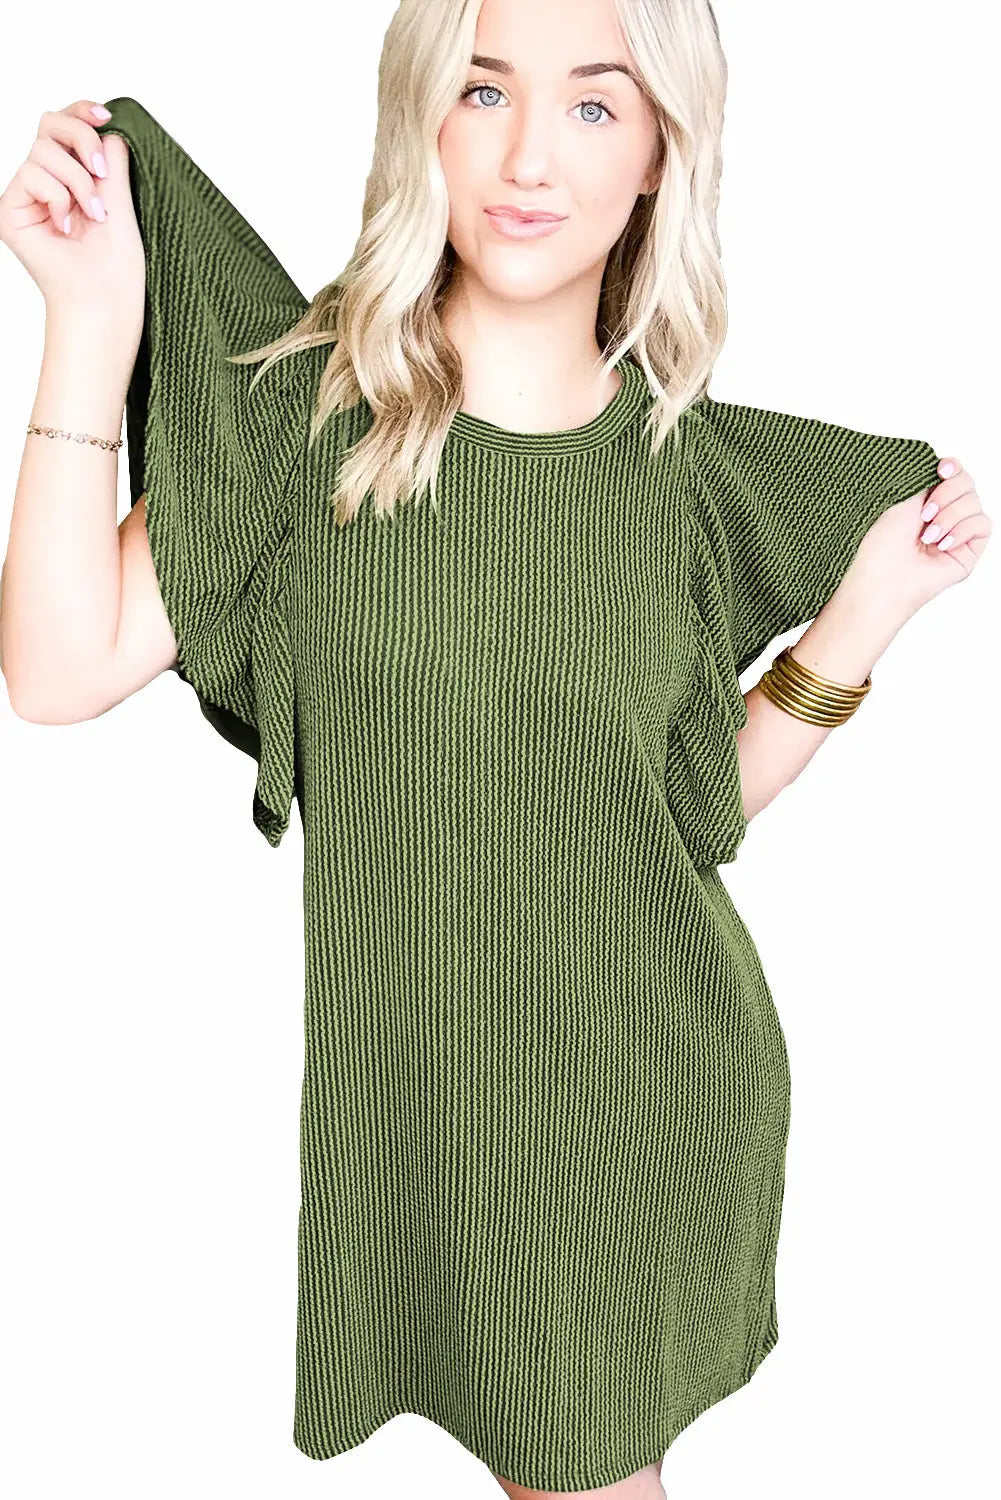 Grass green flutter sleeve ribbed shift dress - t shirt dresses